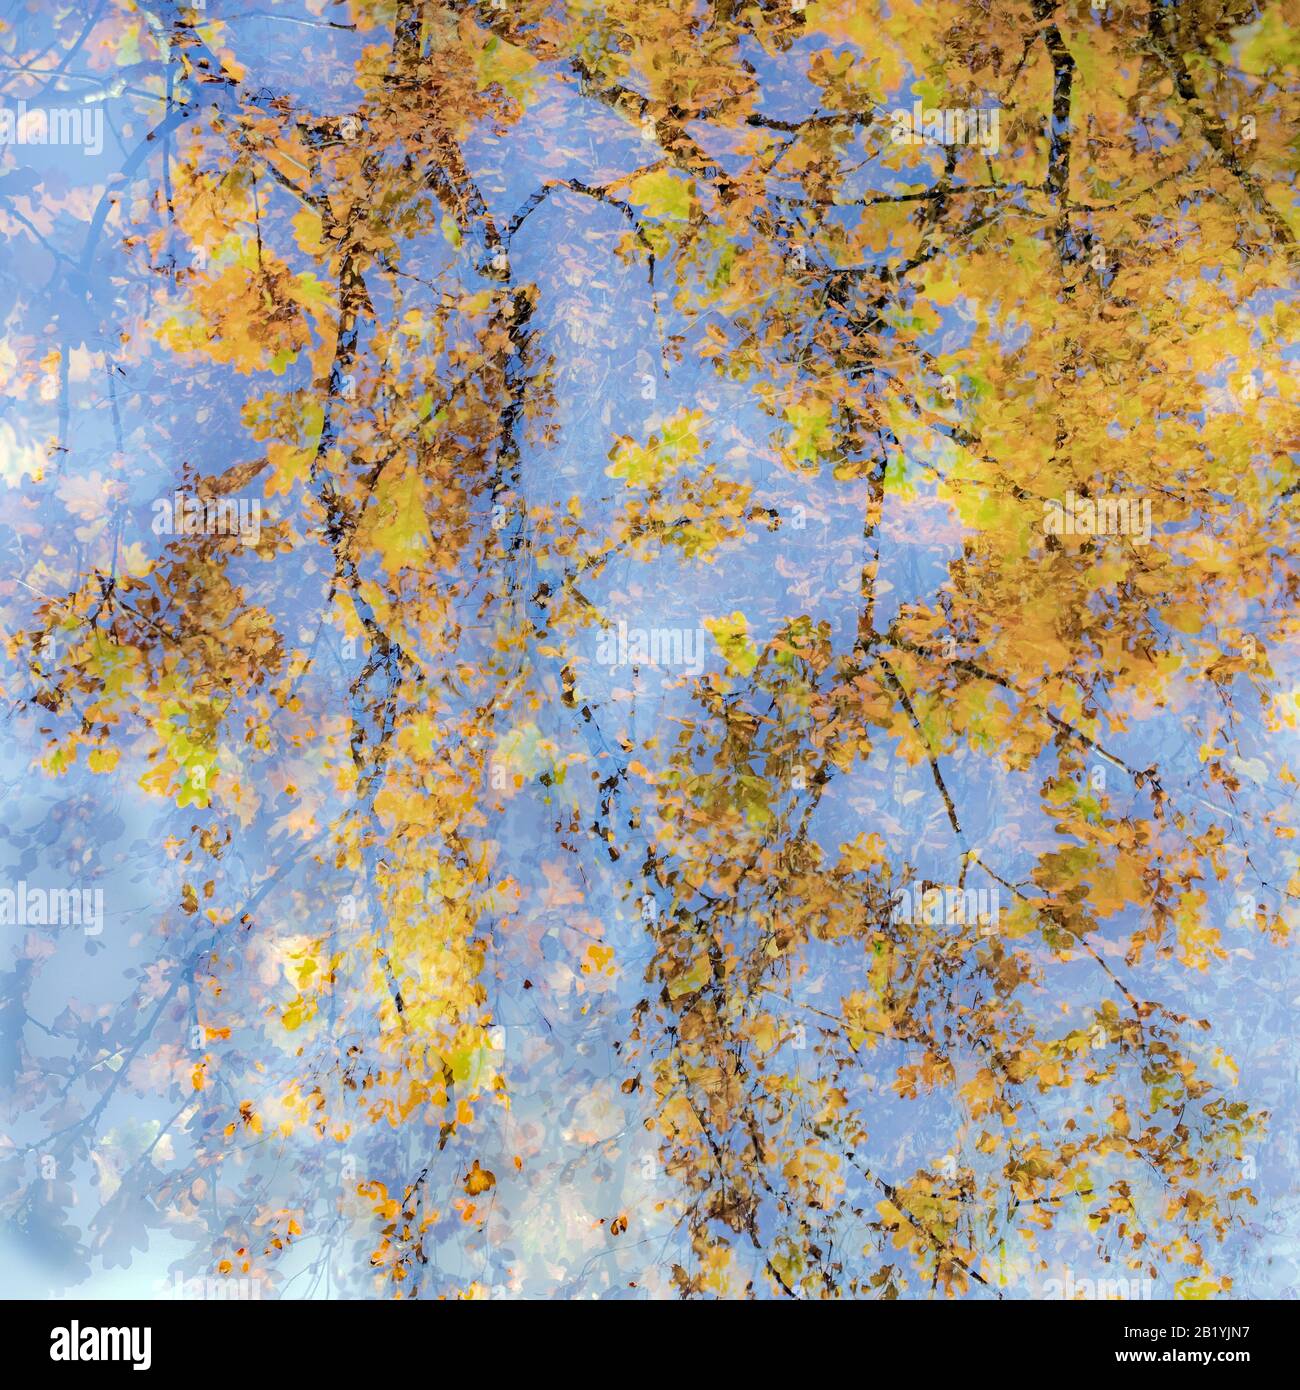 Fotografia artistica astratta e impressionistica in tonalità tonalità e tinte delle foreste e dei boschi di Cannock Chase che mostrano elementi di design co Foto Stock